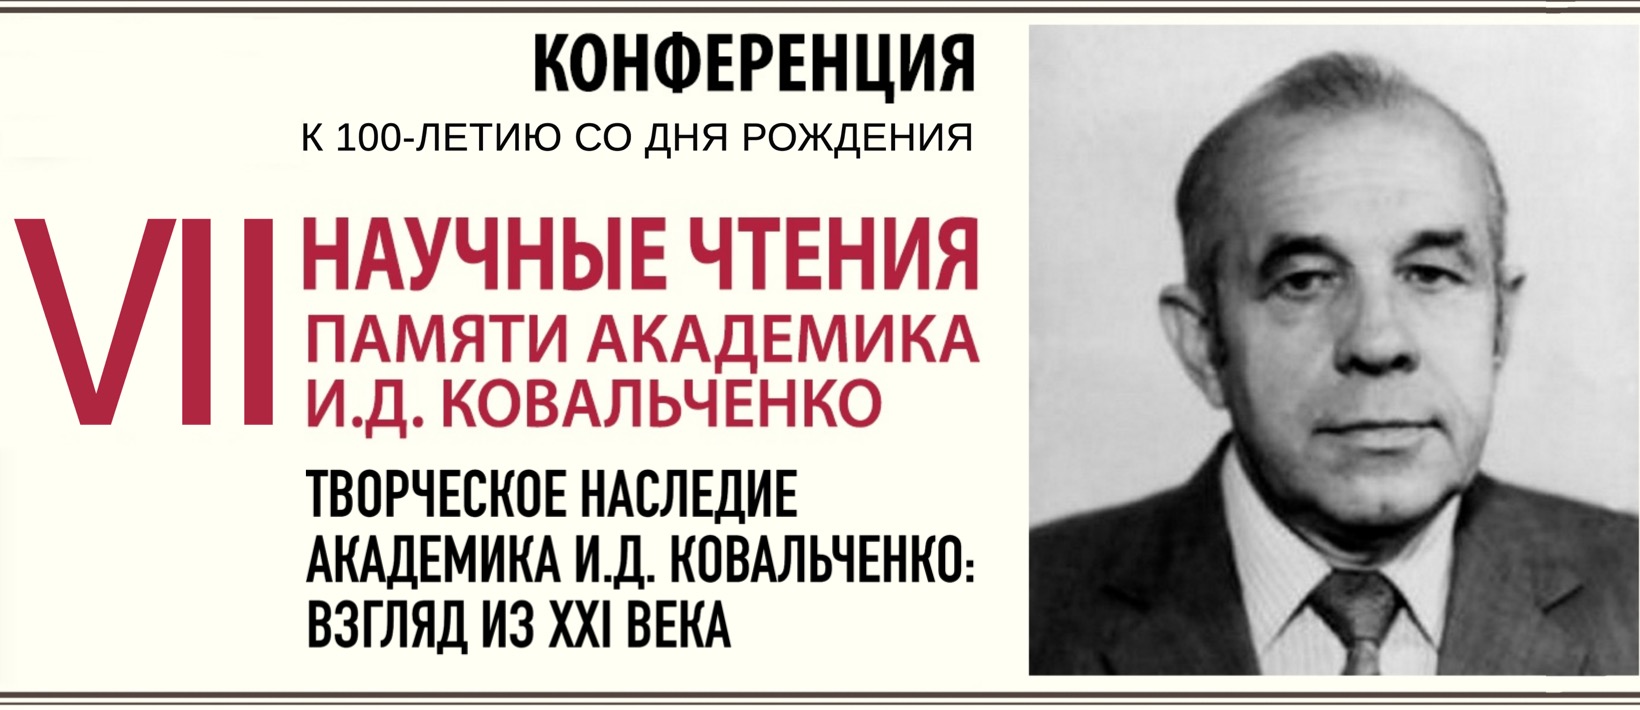 VII Научные чтения памяти академика И.Д.Ковальченко